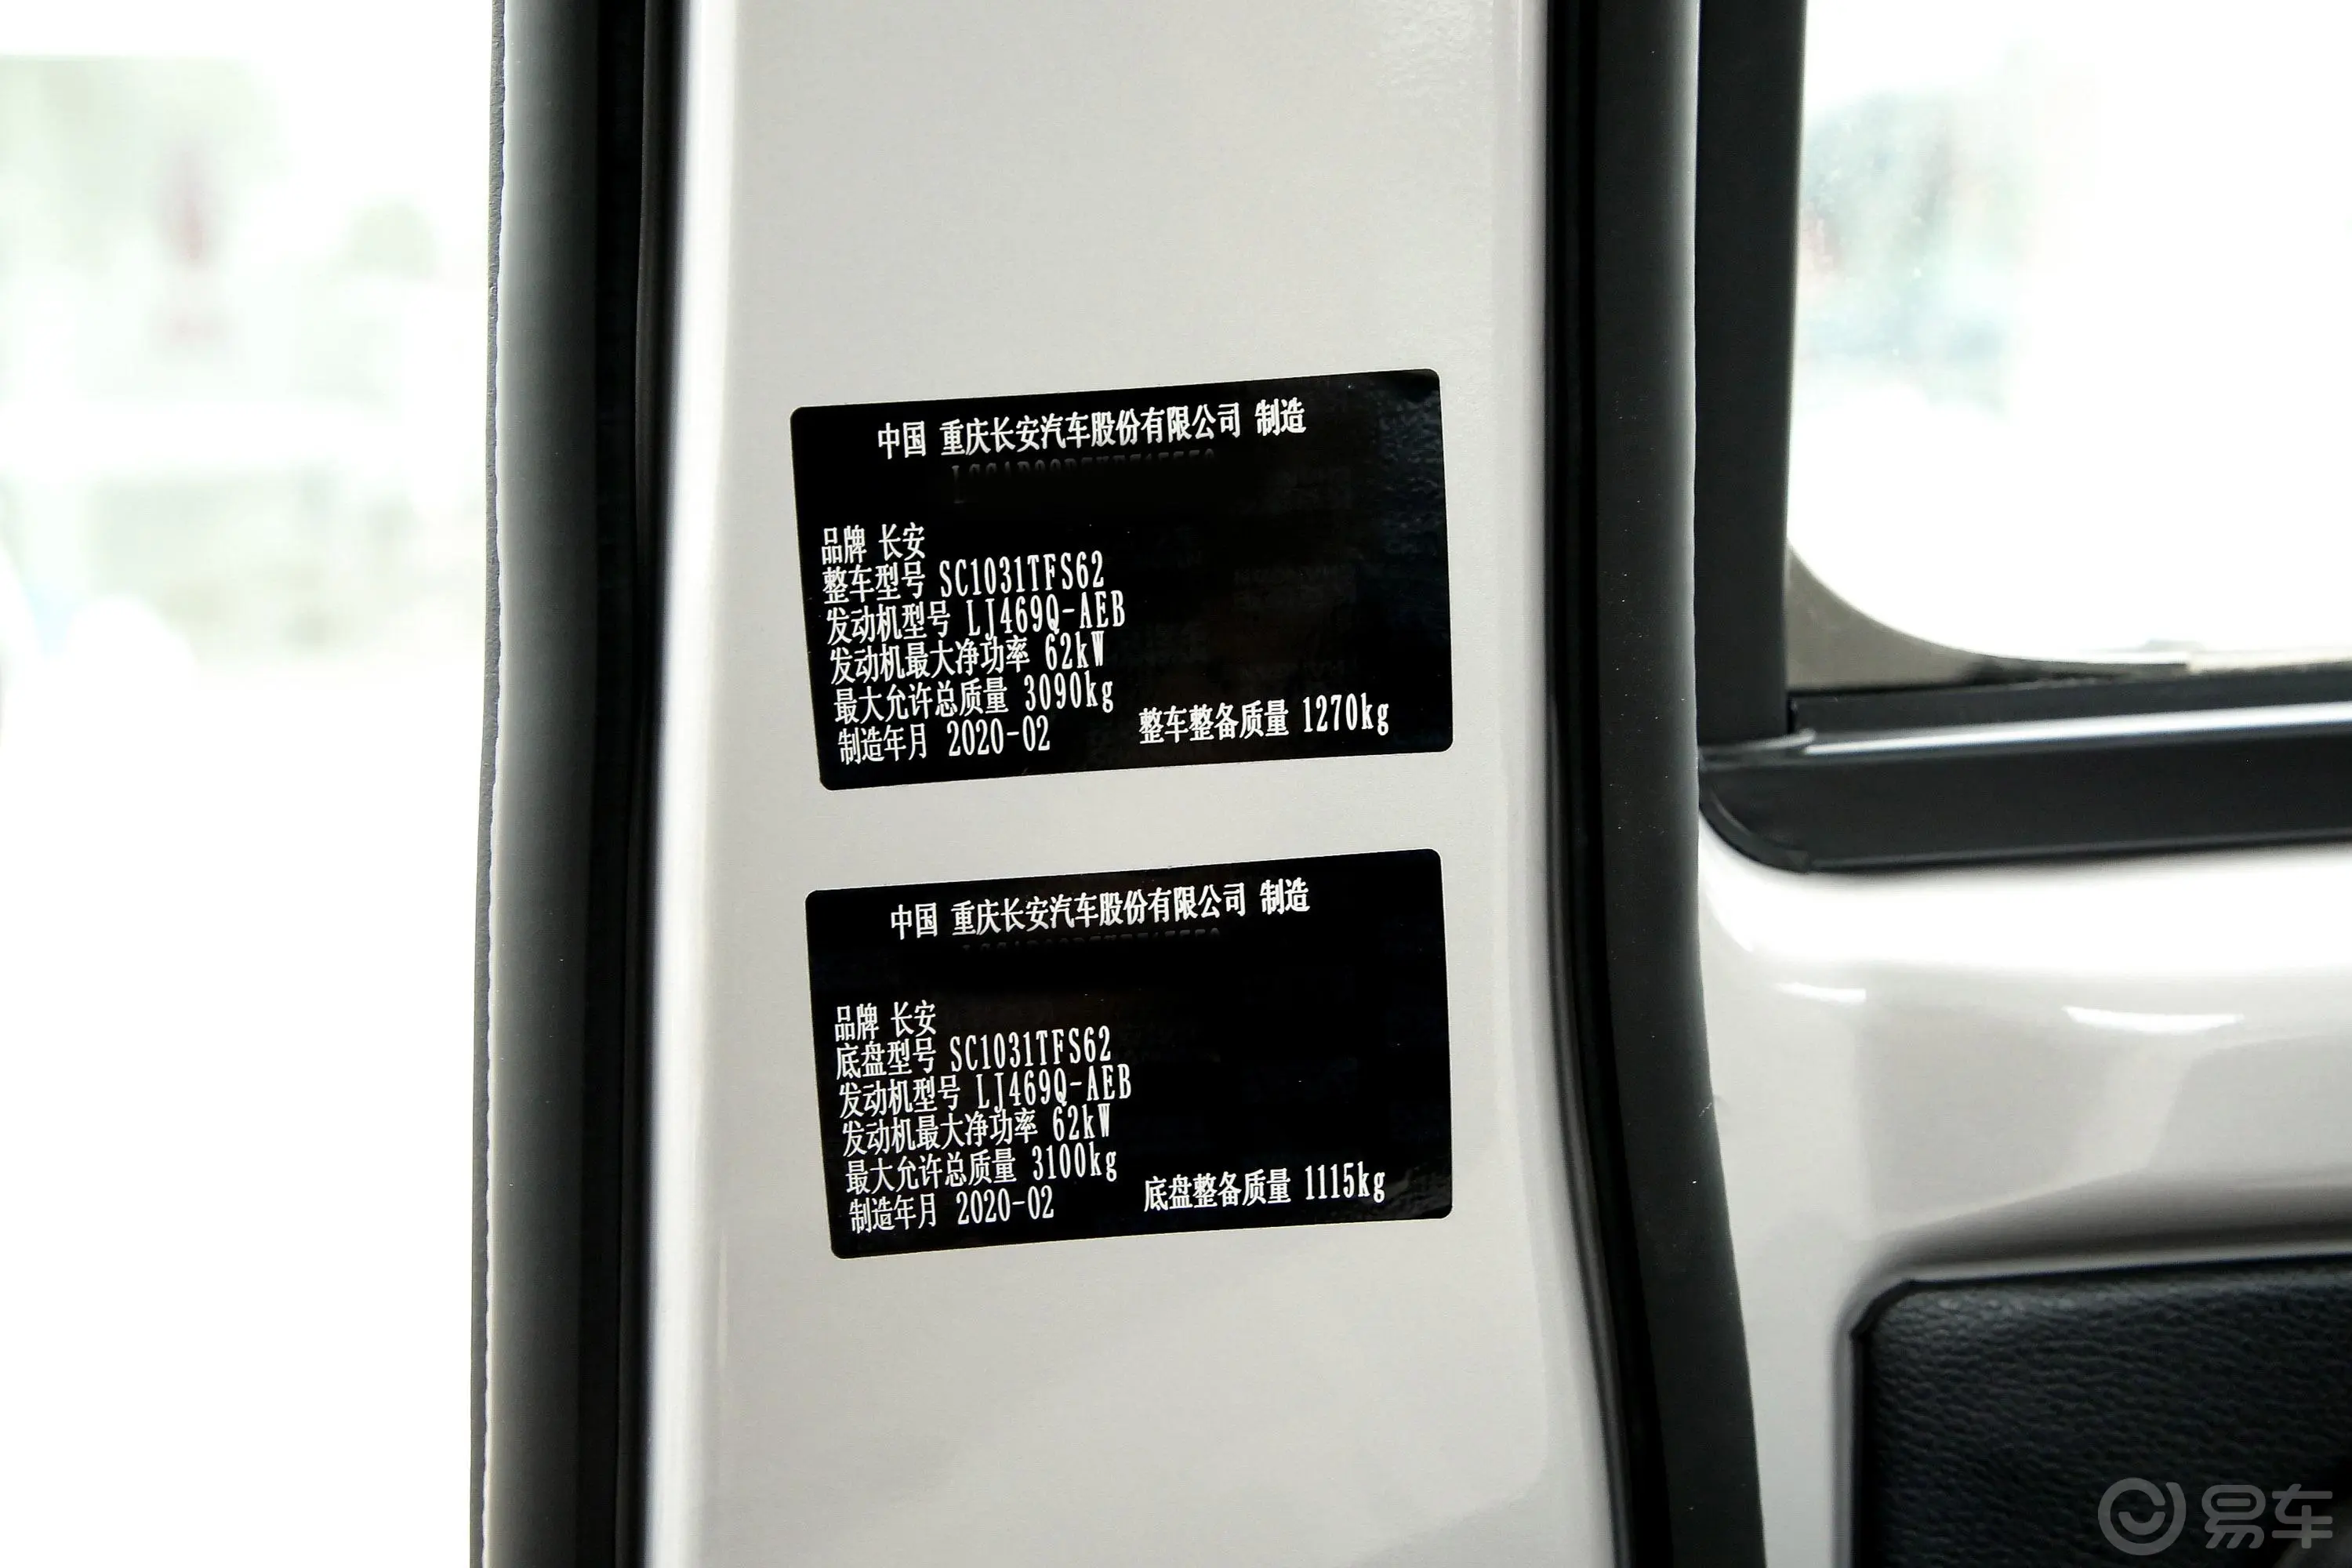 新豹T3载货汽车N1 1.2L 双排单后轮 舒适版 SC1031TFS62 汽油 国VI车辆信息铭牌